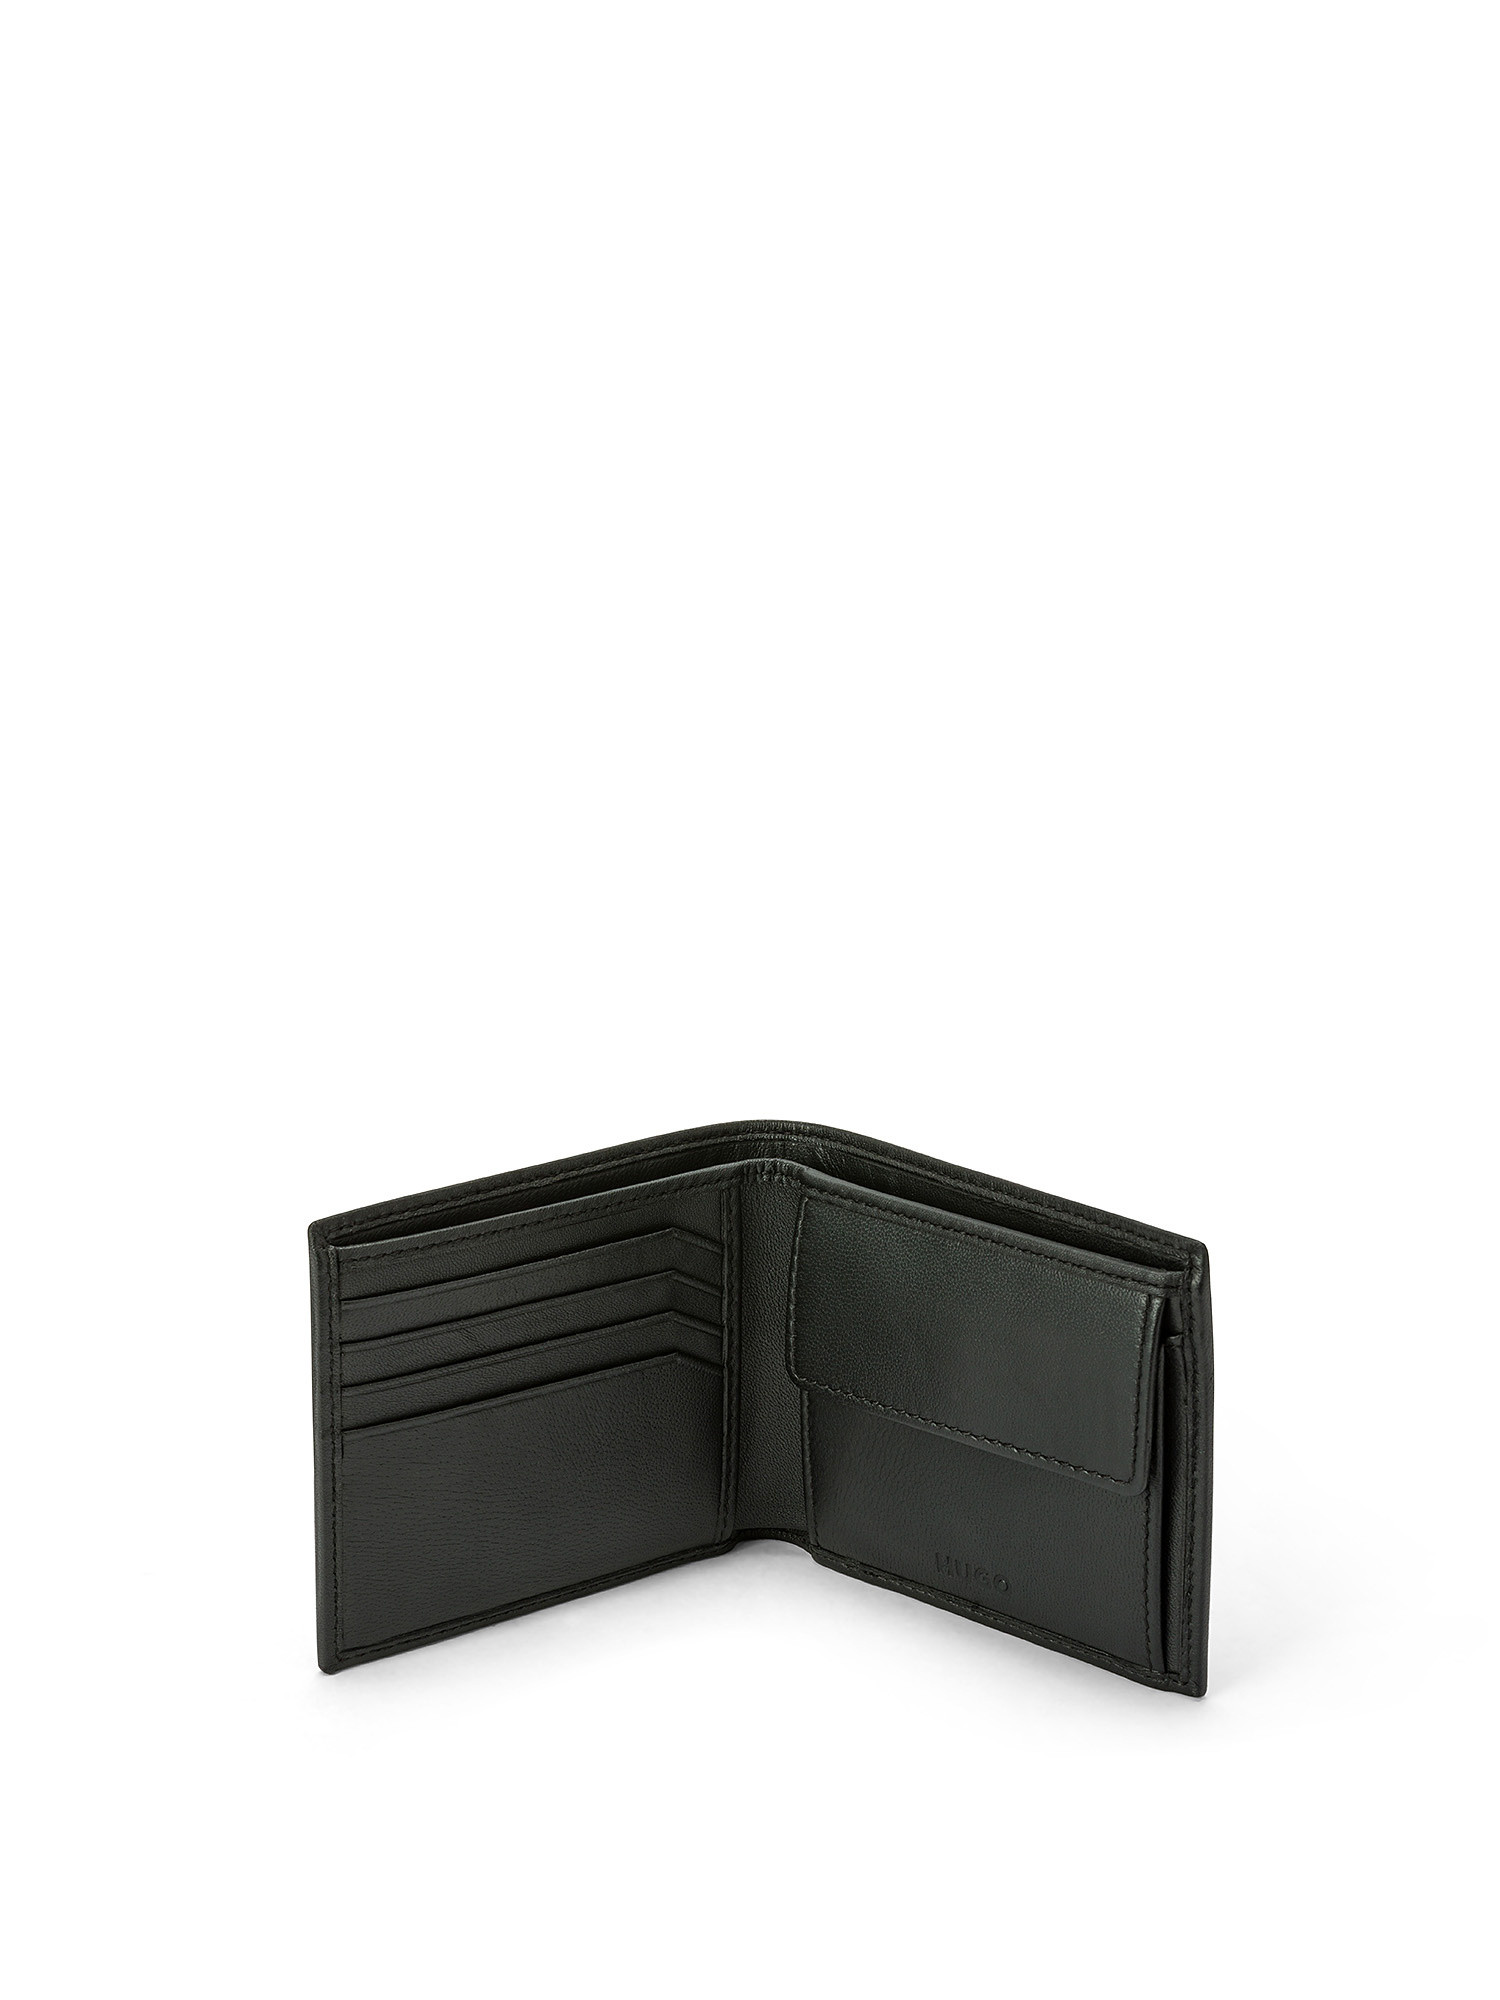 Hugo - Leather wallet with logo, Black, large image number 2